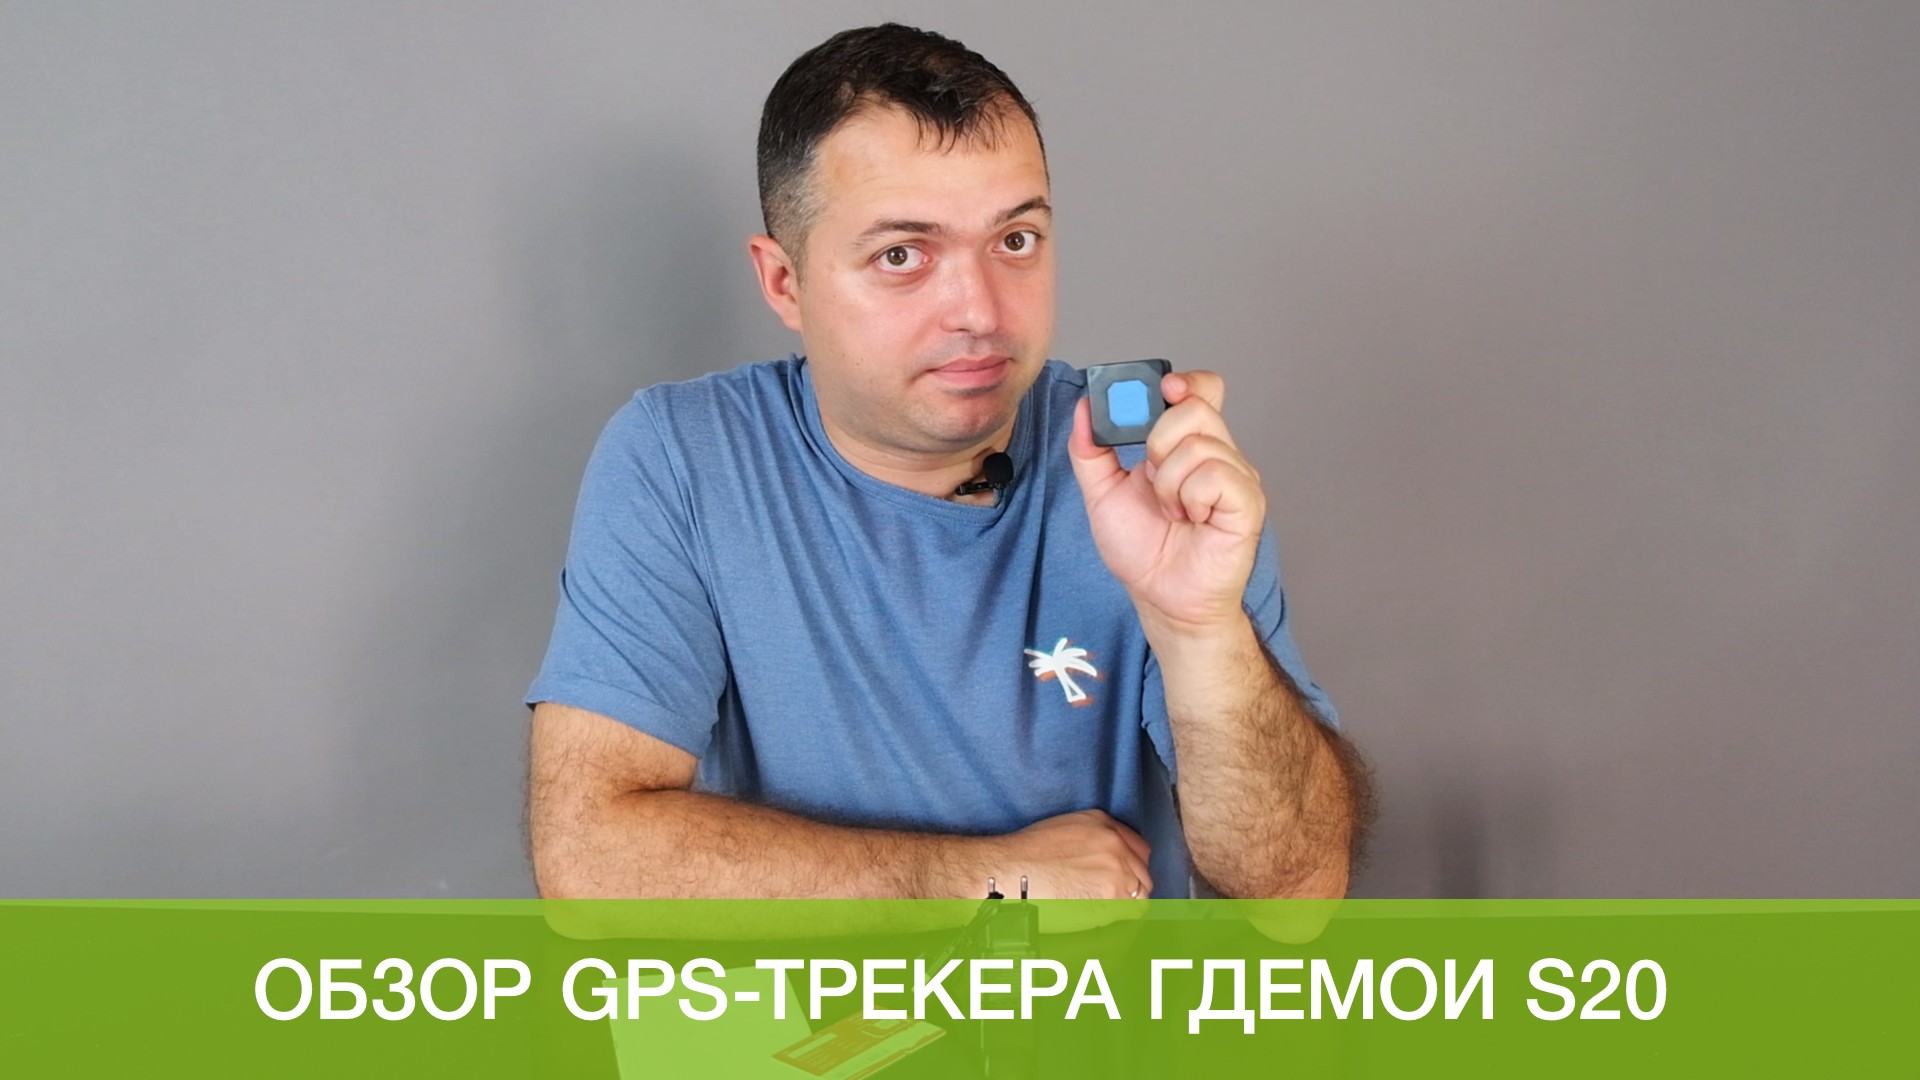 Видеообзор самого компактного GPS-трекера ГдеМои S20